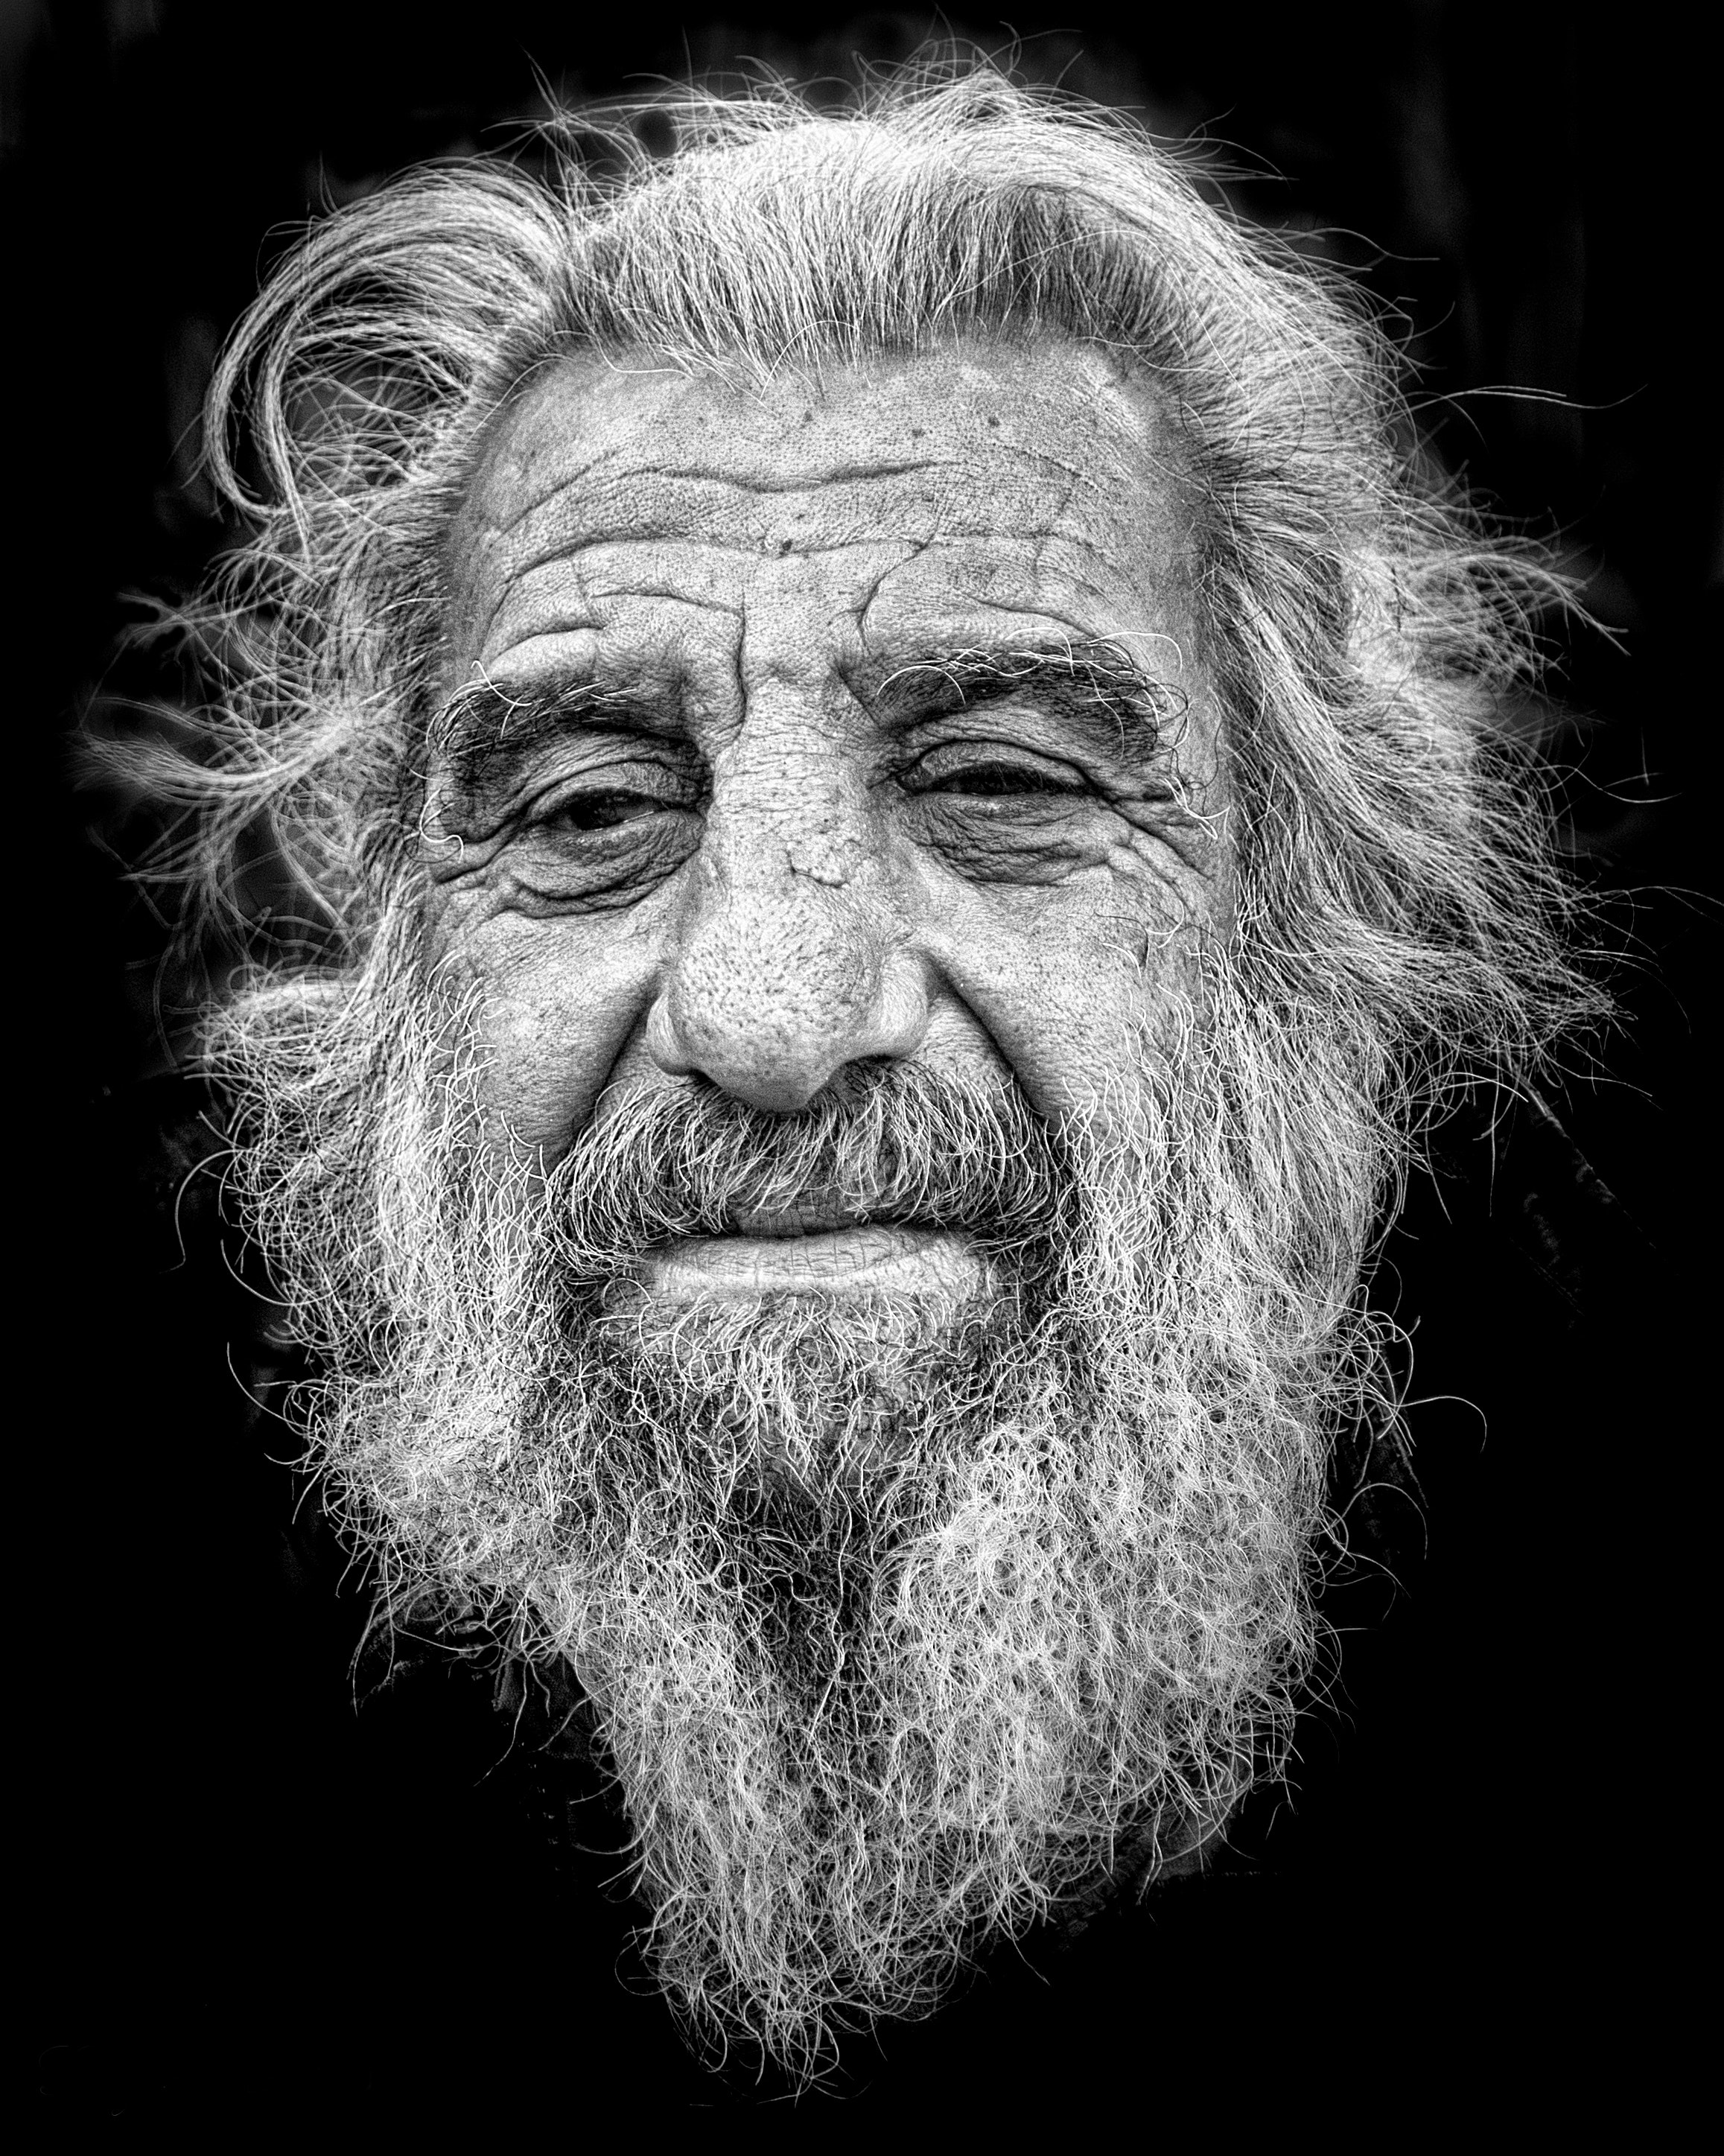 Old man face. Портрет человека с бородой. Фотопортрет пожилого мужчины. Портрет старика с бородой. Черно белые портреты Стариков.